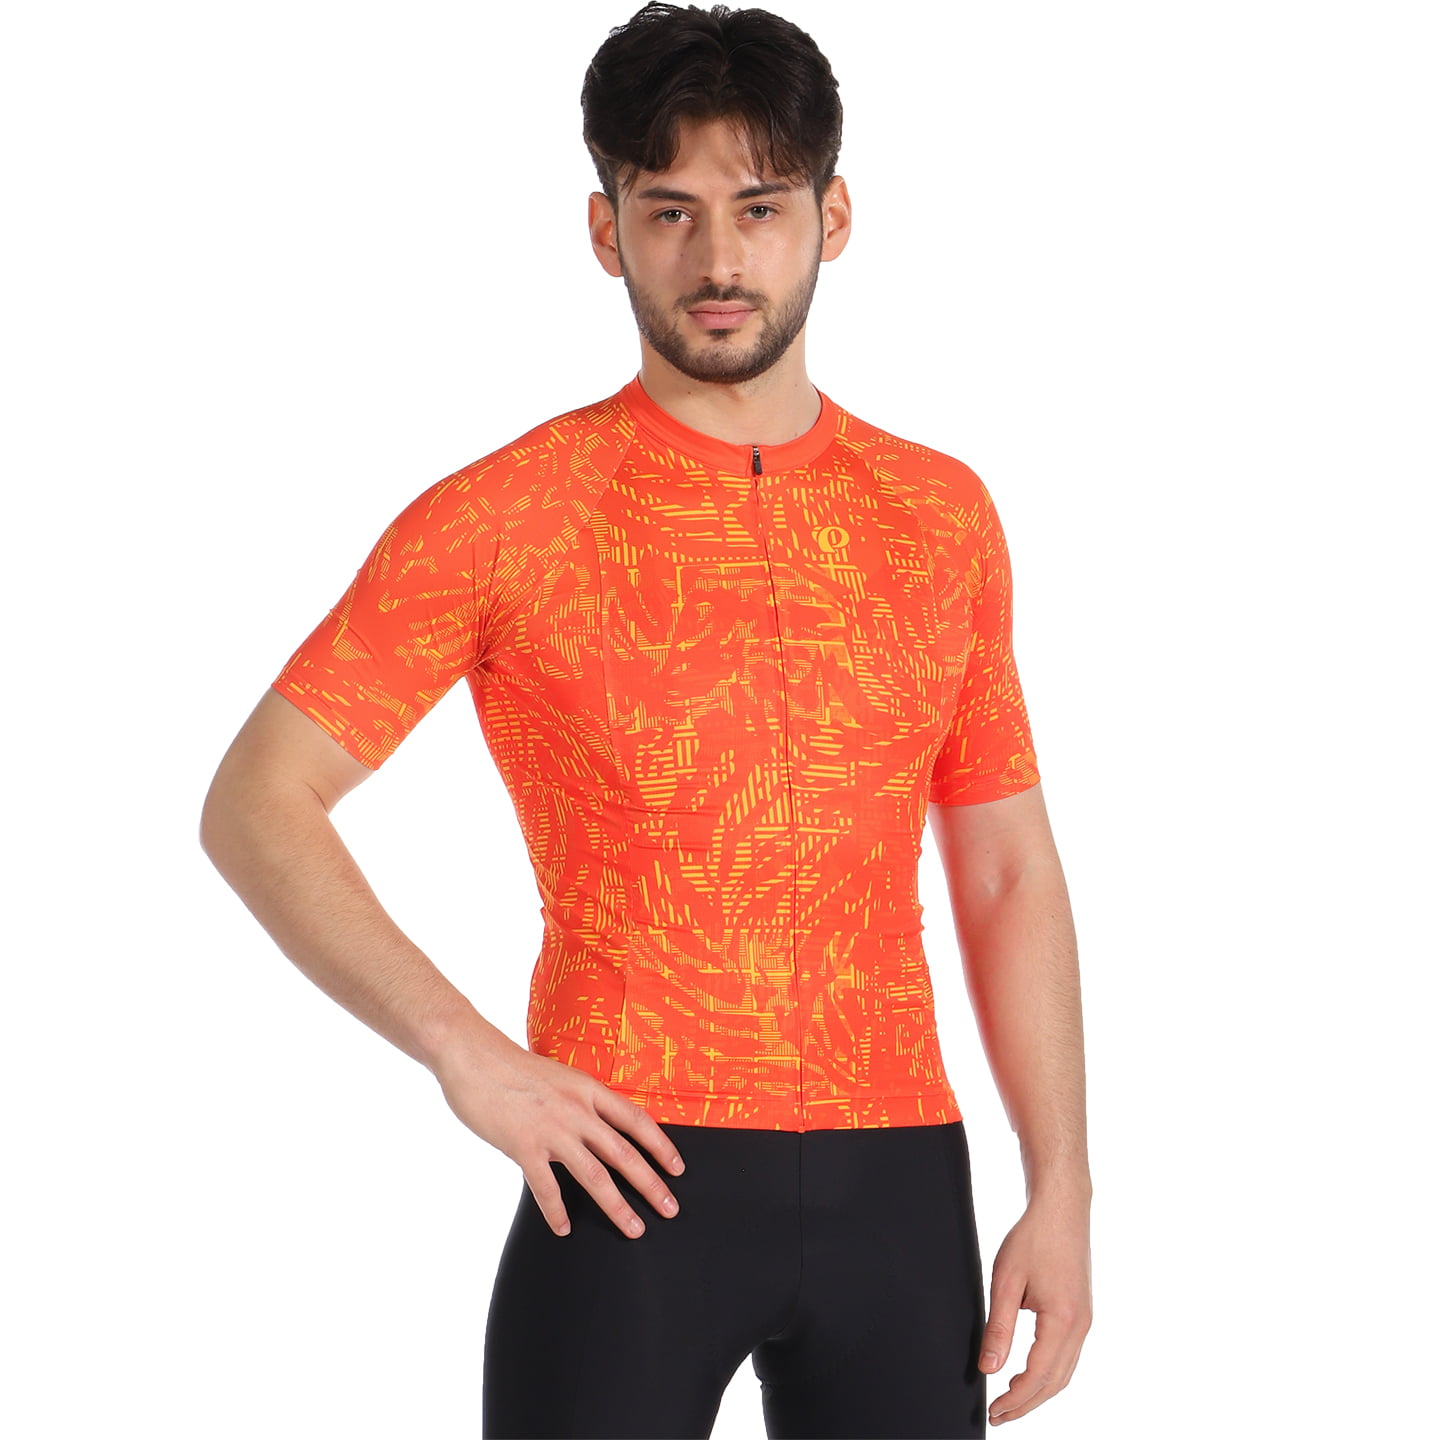 PEARL IZUMI Interval Short Sleeve Jersey Short Sleeve Jersey, for men, size M, Cycling jersey, Cycling clothing